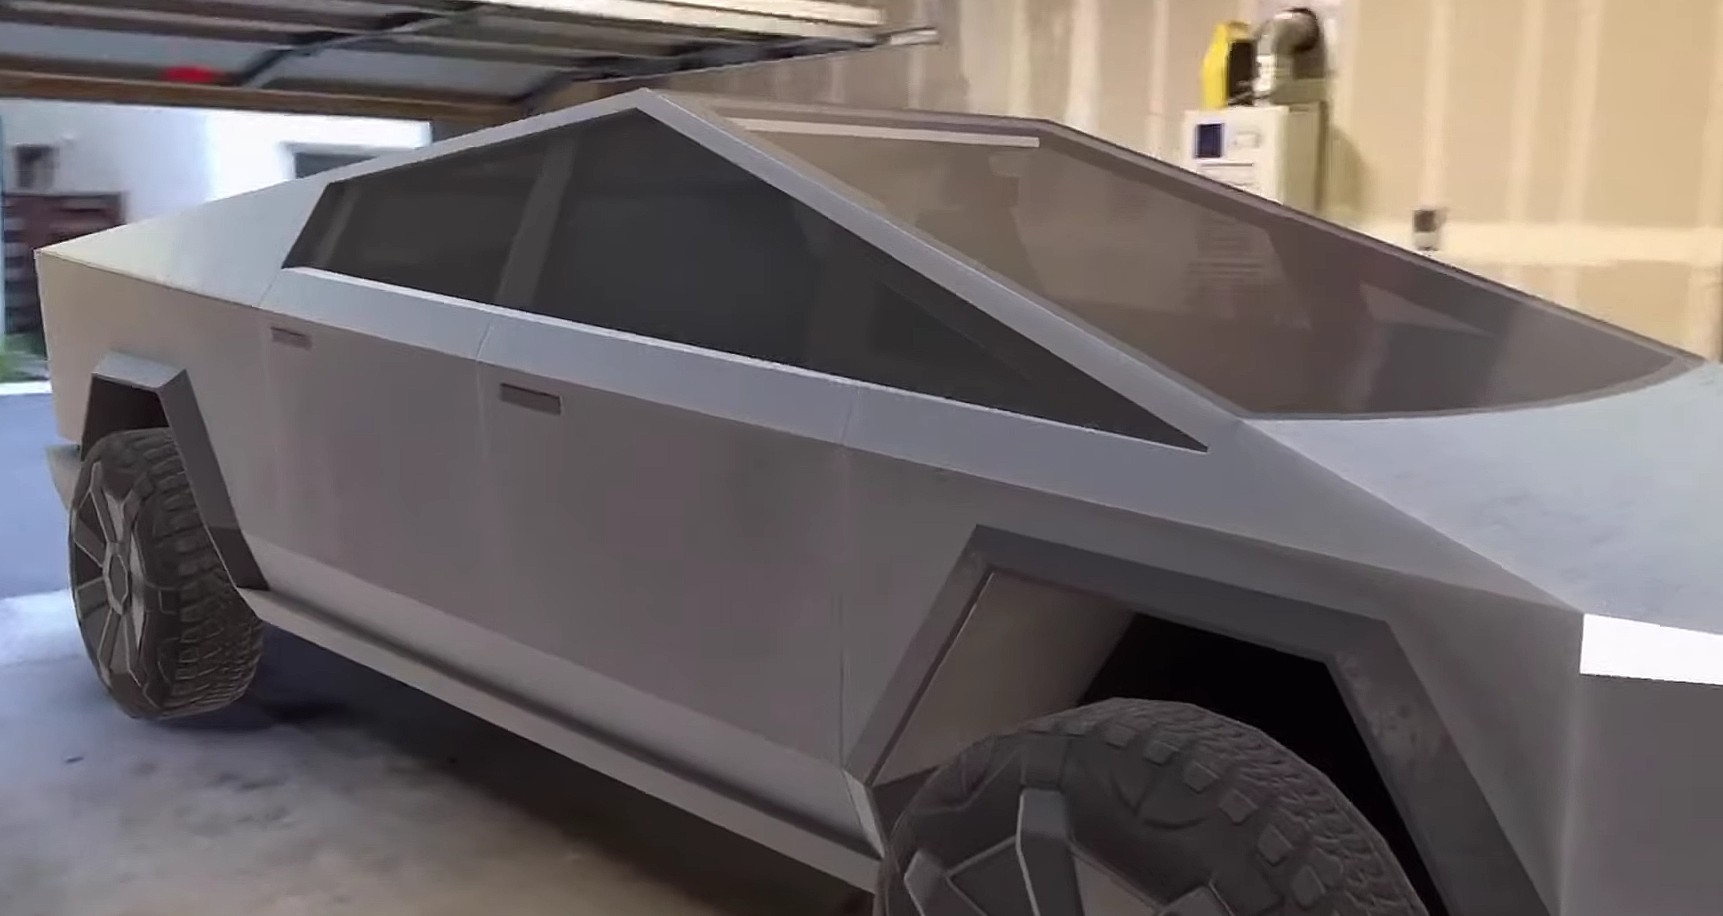 Parking A Tesla Cybertruck Inside A Home Garage Isn T Going